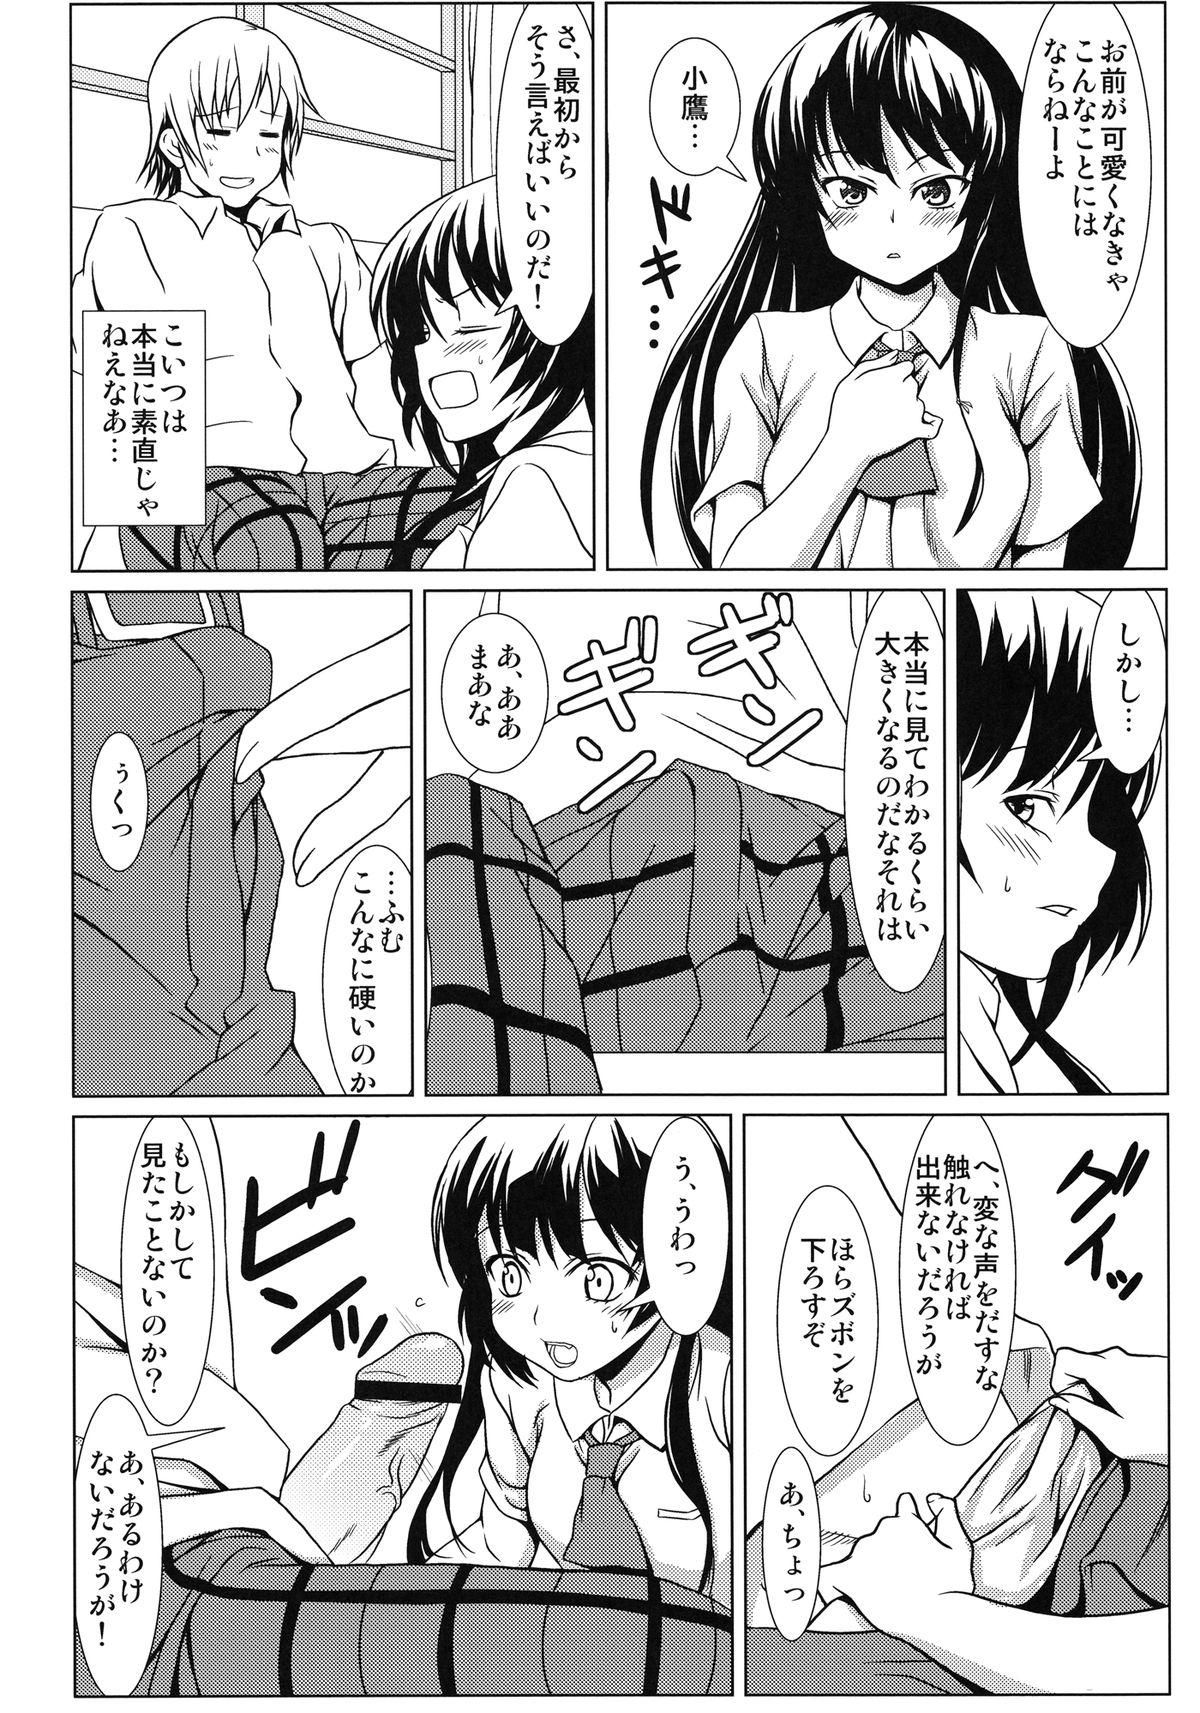 Reality Yozora no Mukou - Boku wa tomodachi ga sukunai Exibicionismo - Page 8